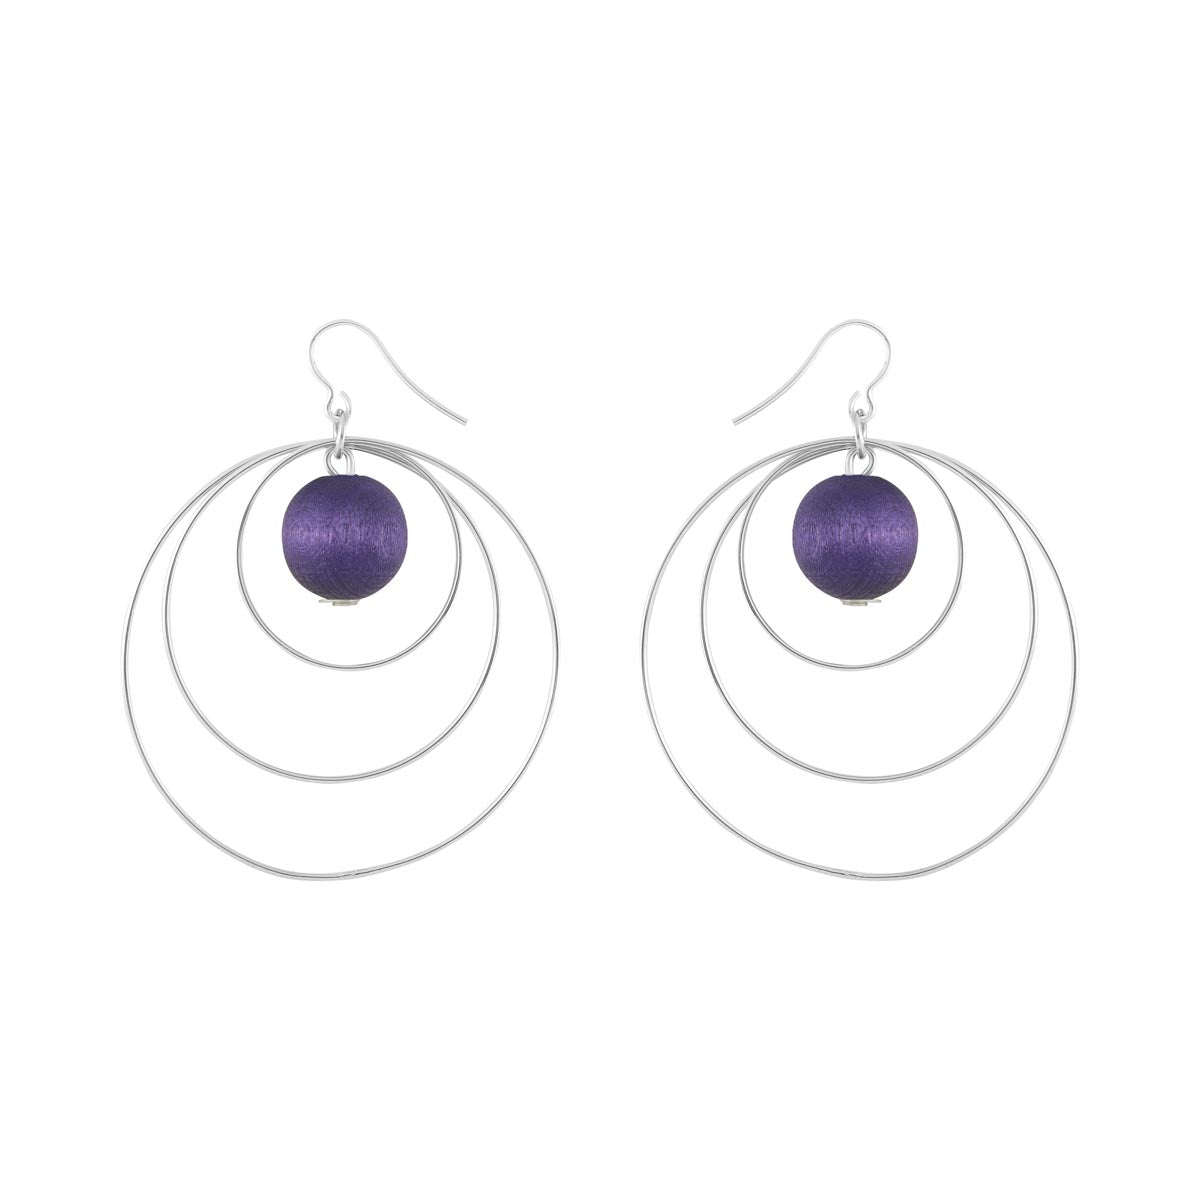 Piruetti earrings, purple